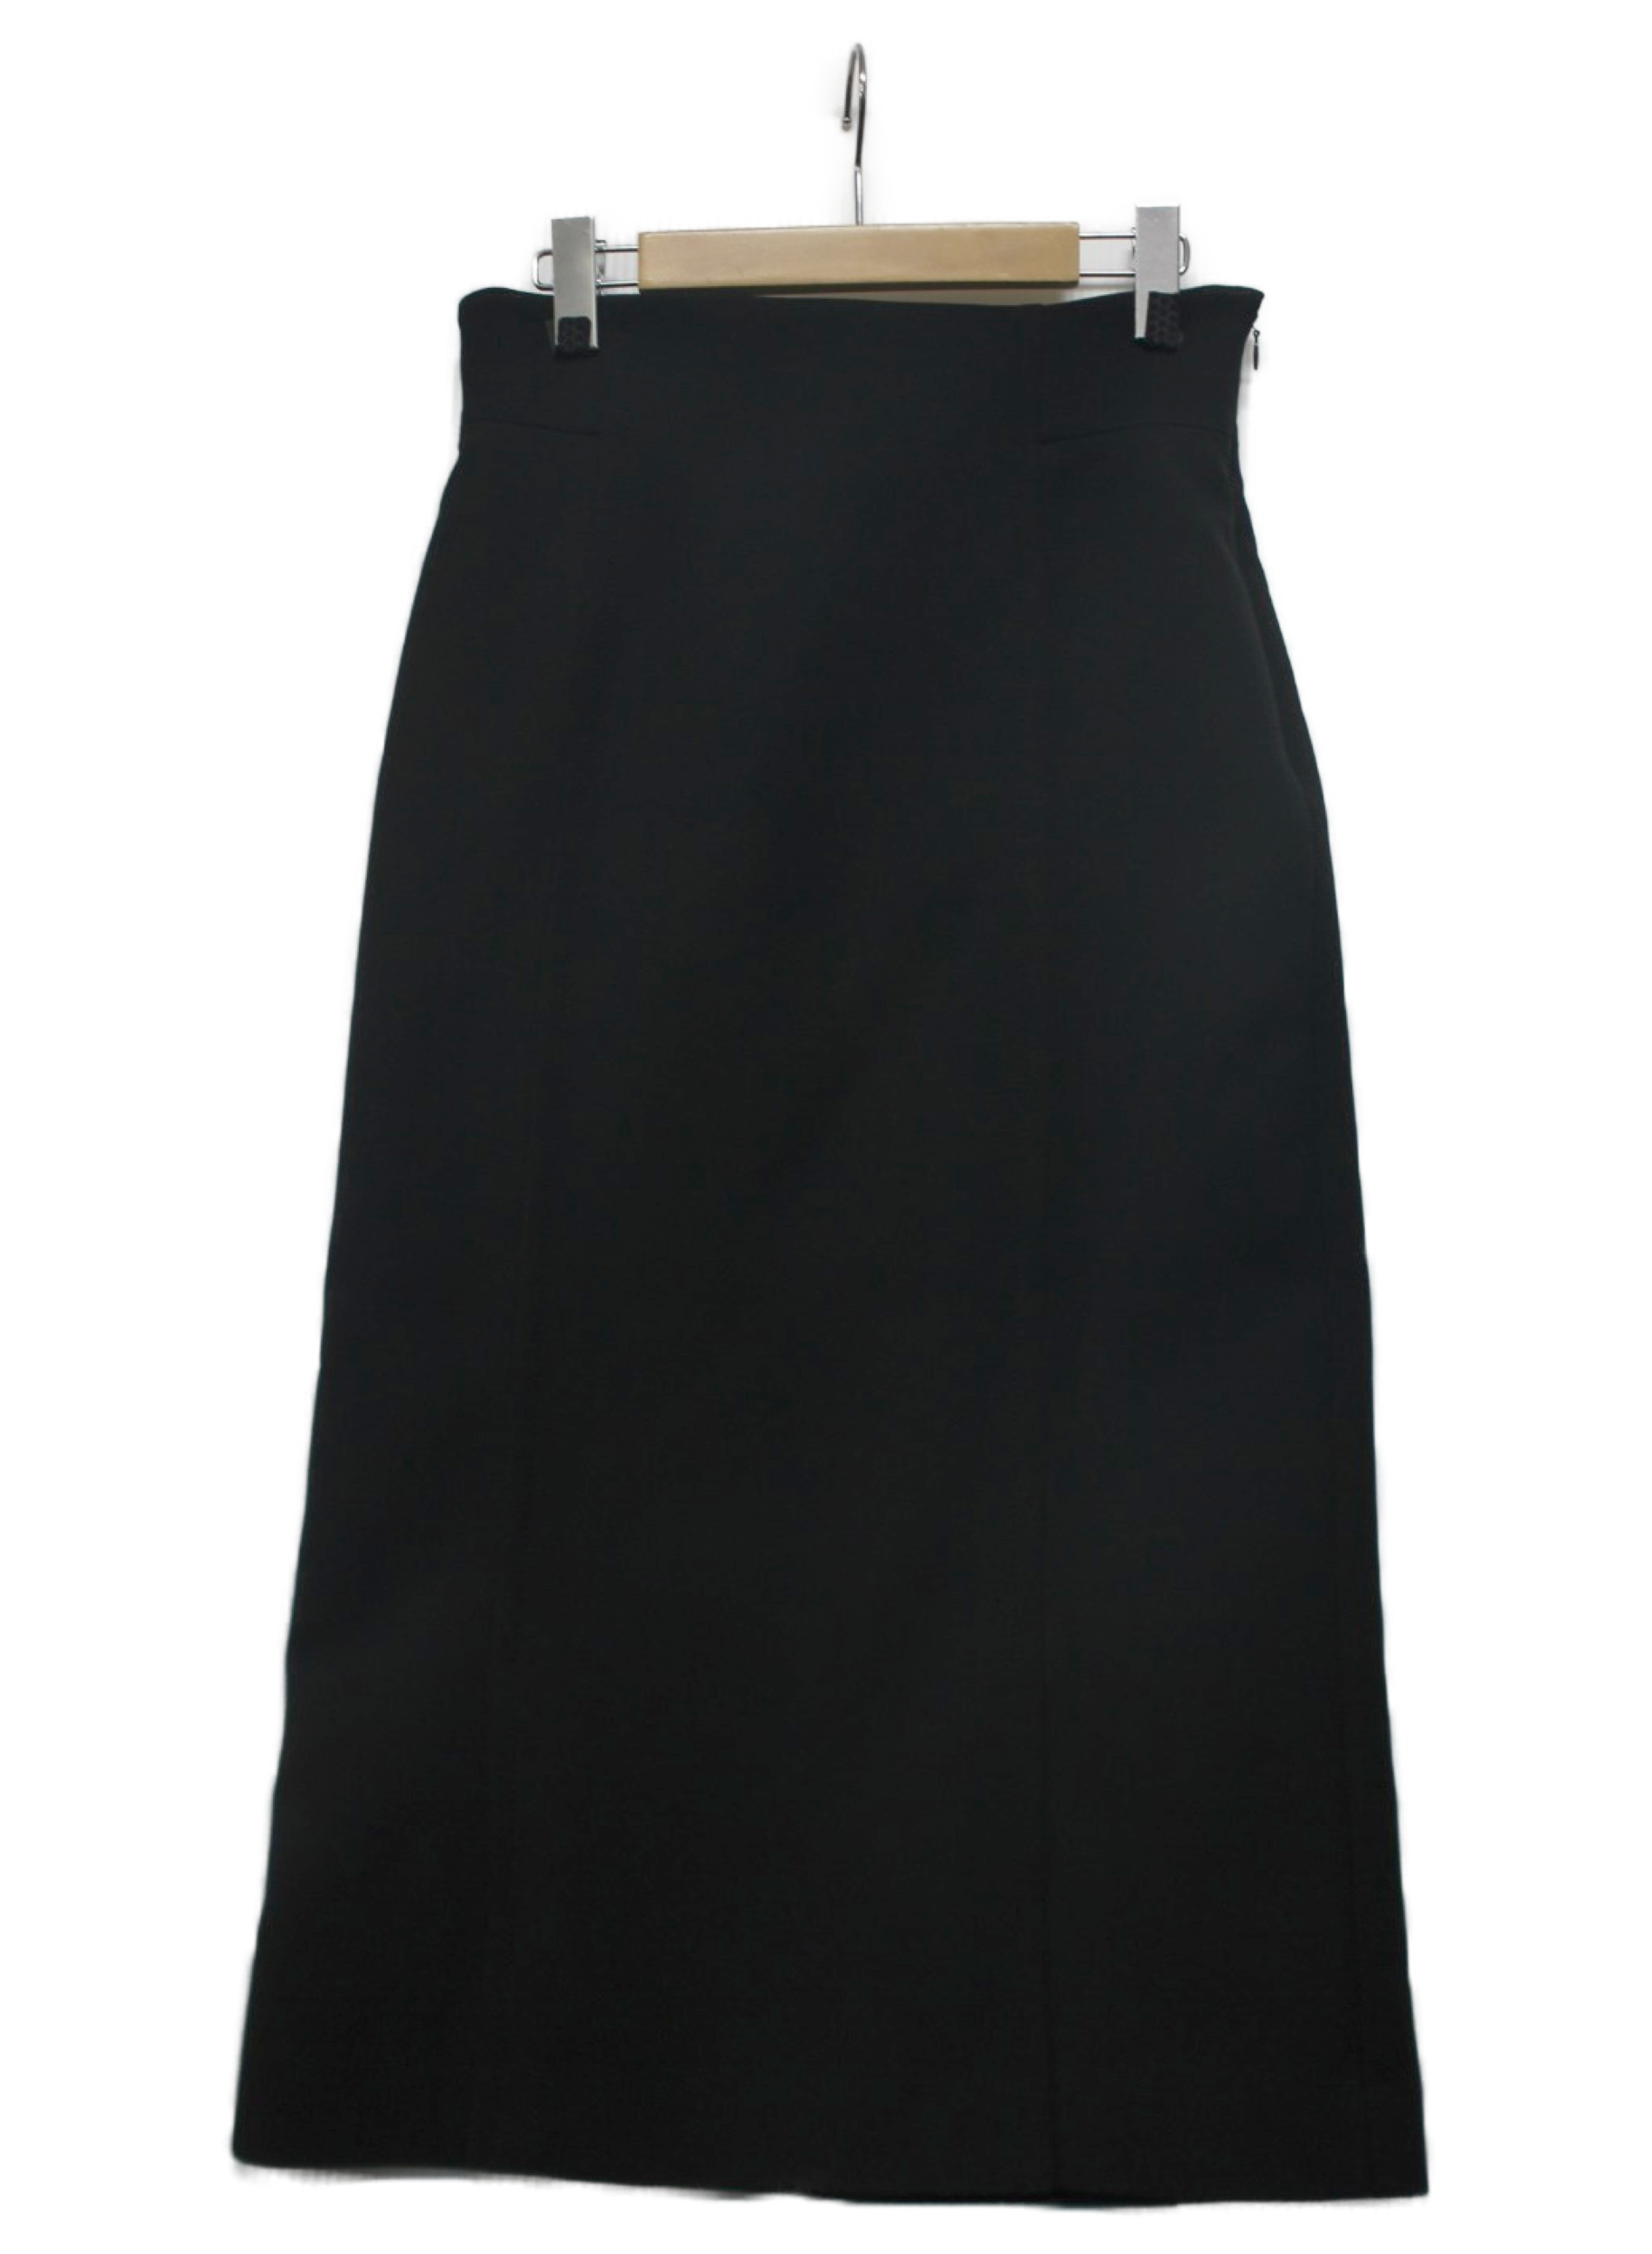 ADORE (アドーア) トリプルクロススカートスーツ ブラック サイズ:38 未使用品